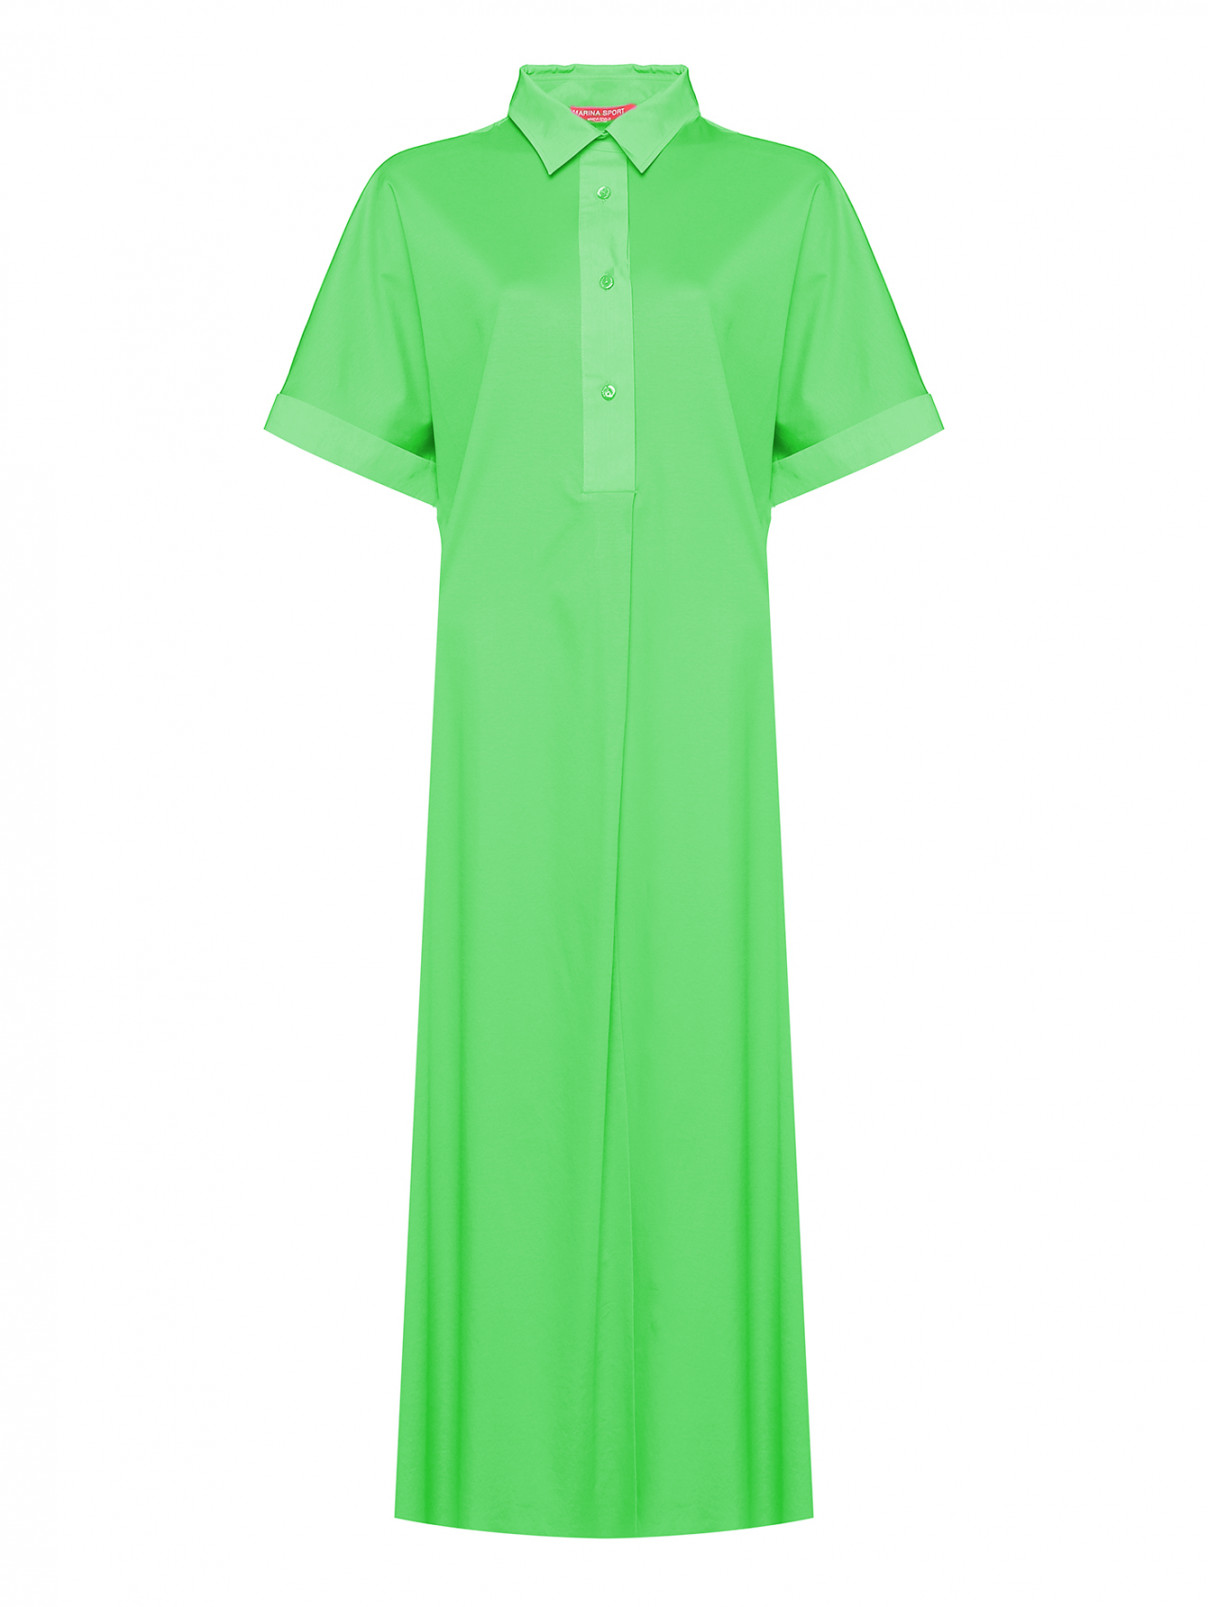 Трикотажное платье с короткими рукавами Marina Rinaldi  –  Общий вид  – Цвет:  Зеленый